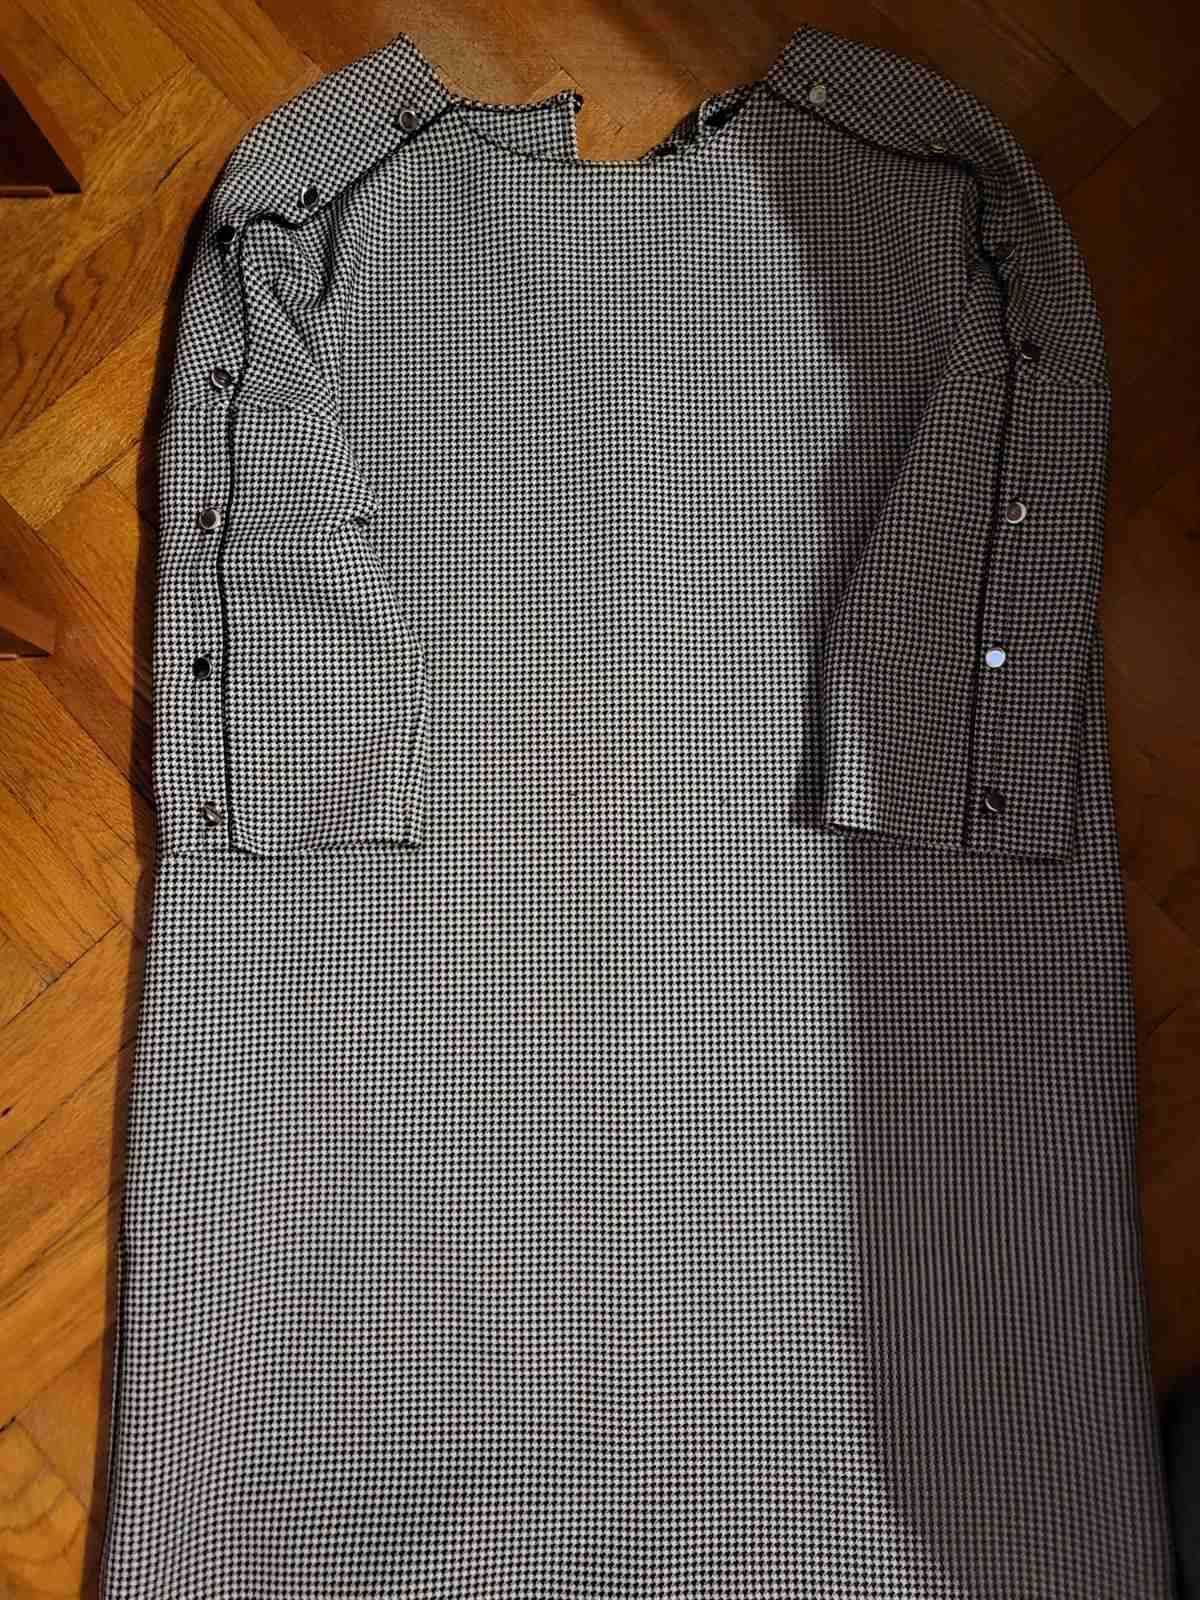 дамска рокля Зара, размер S, с джобове  и 3/ 4 ръкави